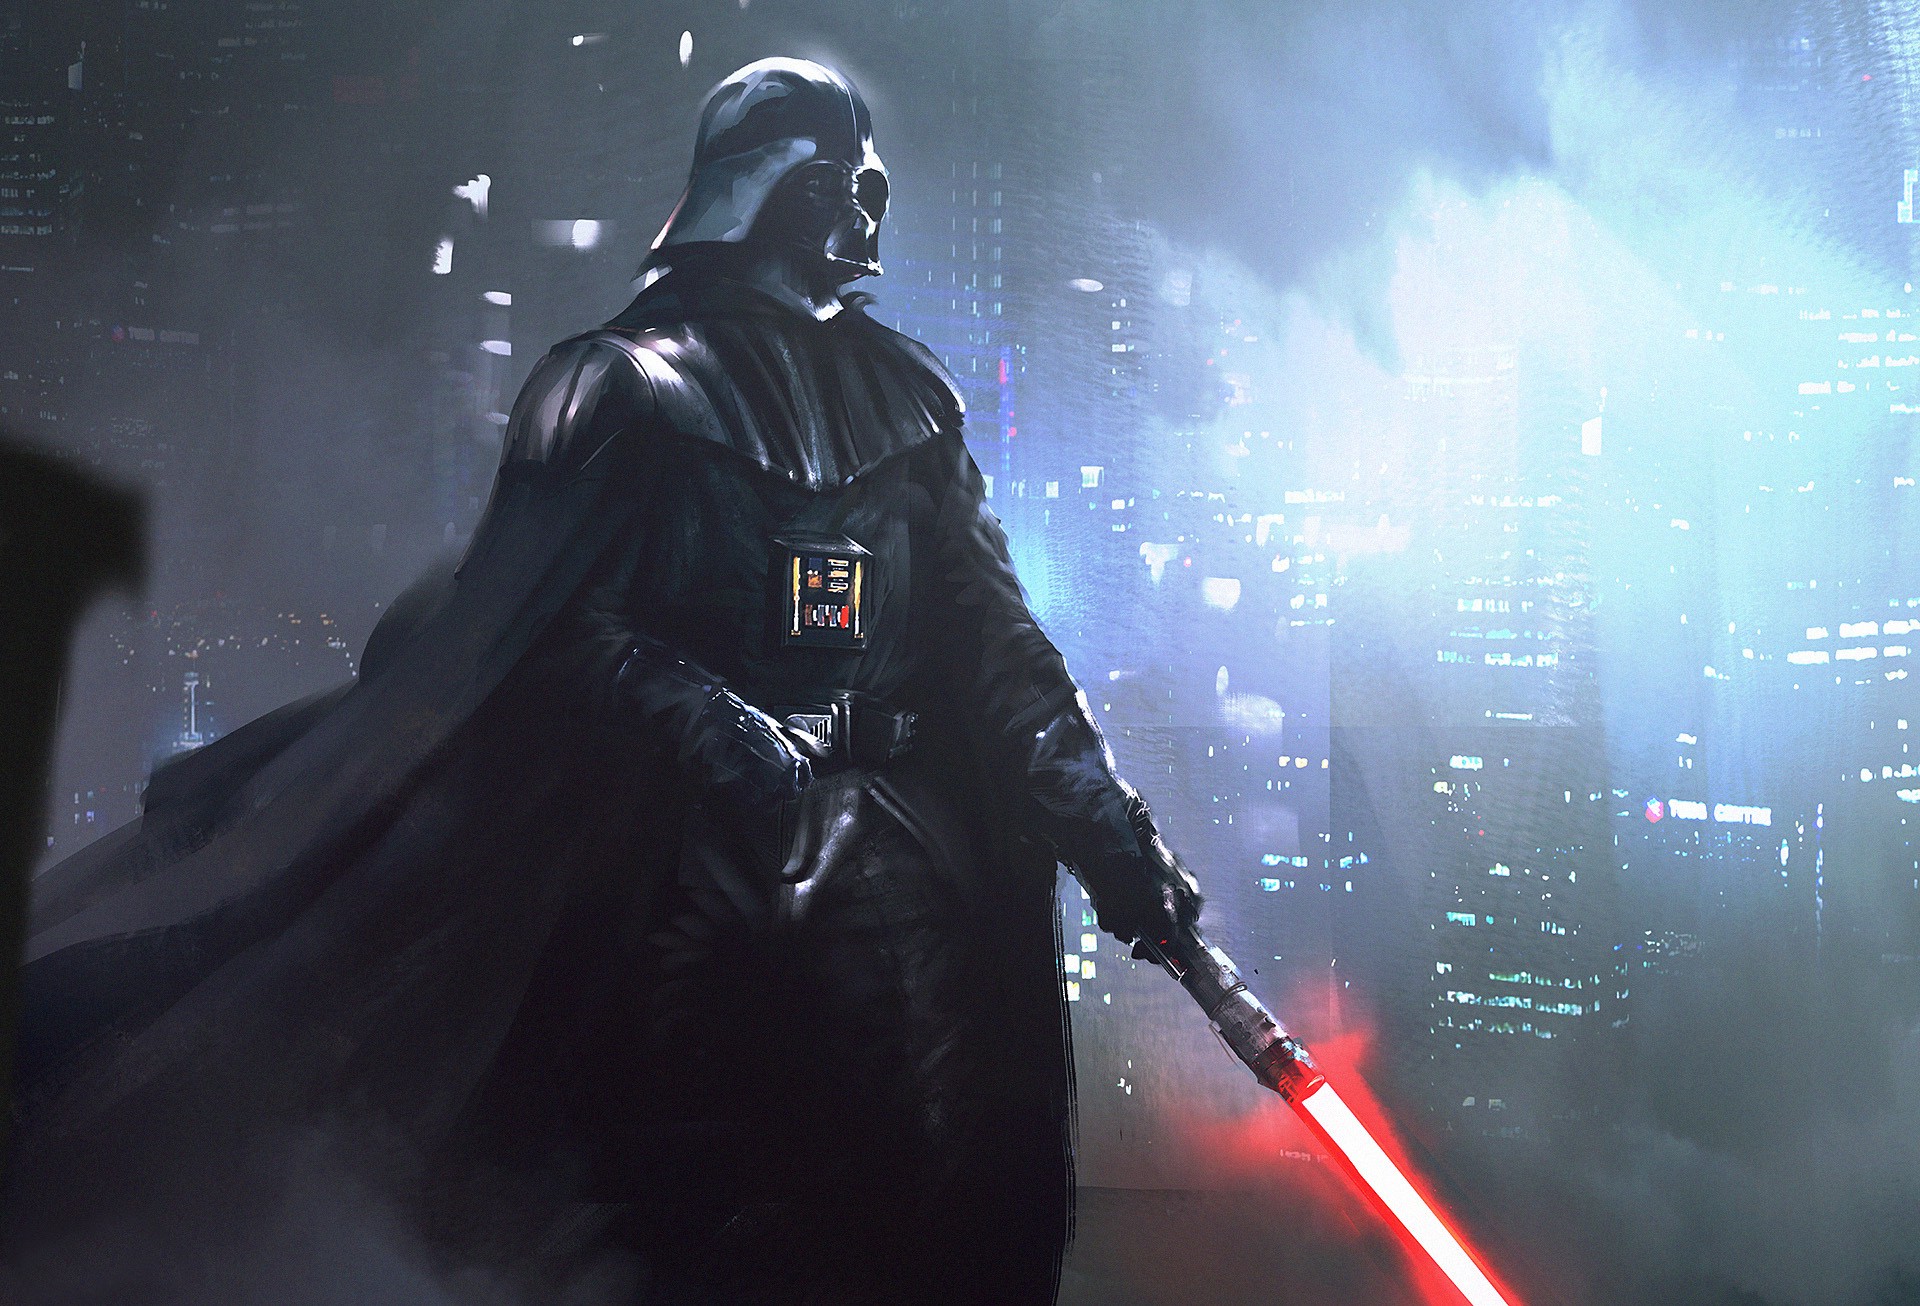 Star Wars Darth Vader Artwork Digital Art Lightsaber Science Fiction Wallpapers Hd